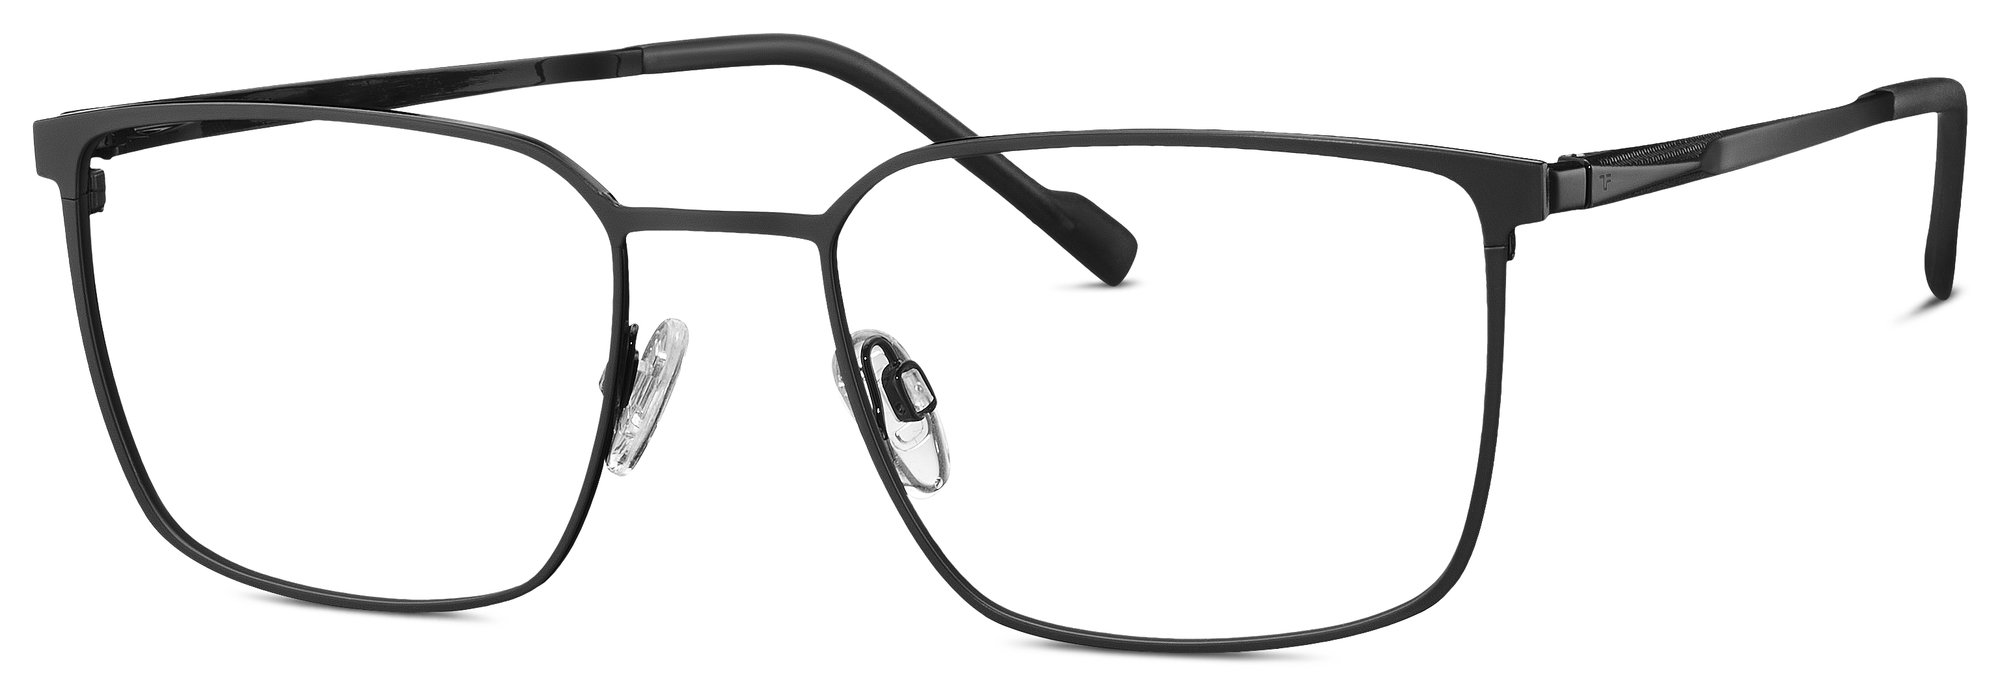 Das Bild zeigt die Korrektionsbrille 820950 10 von der Marke Titanflex in schwarz.